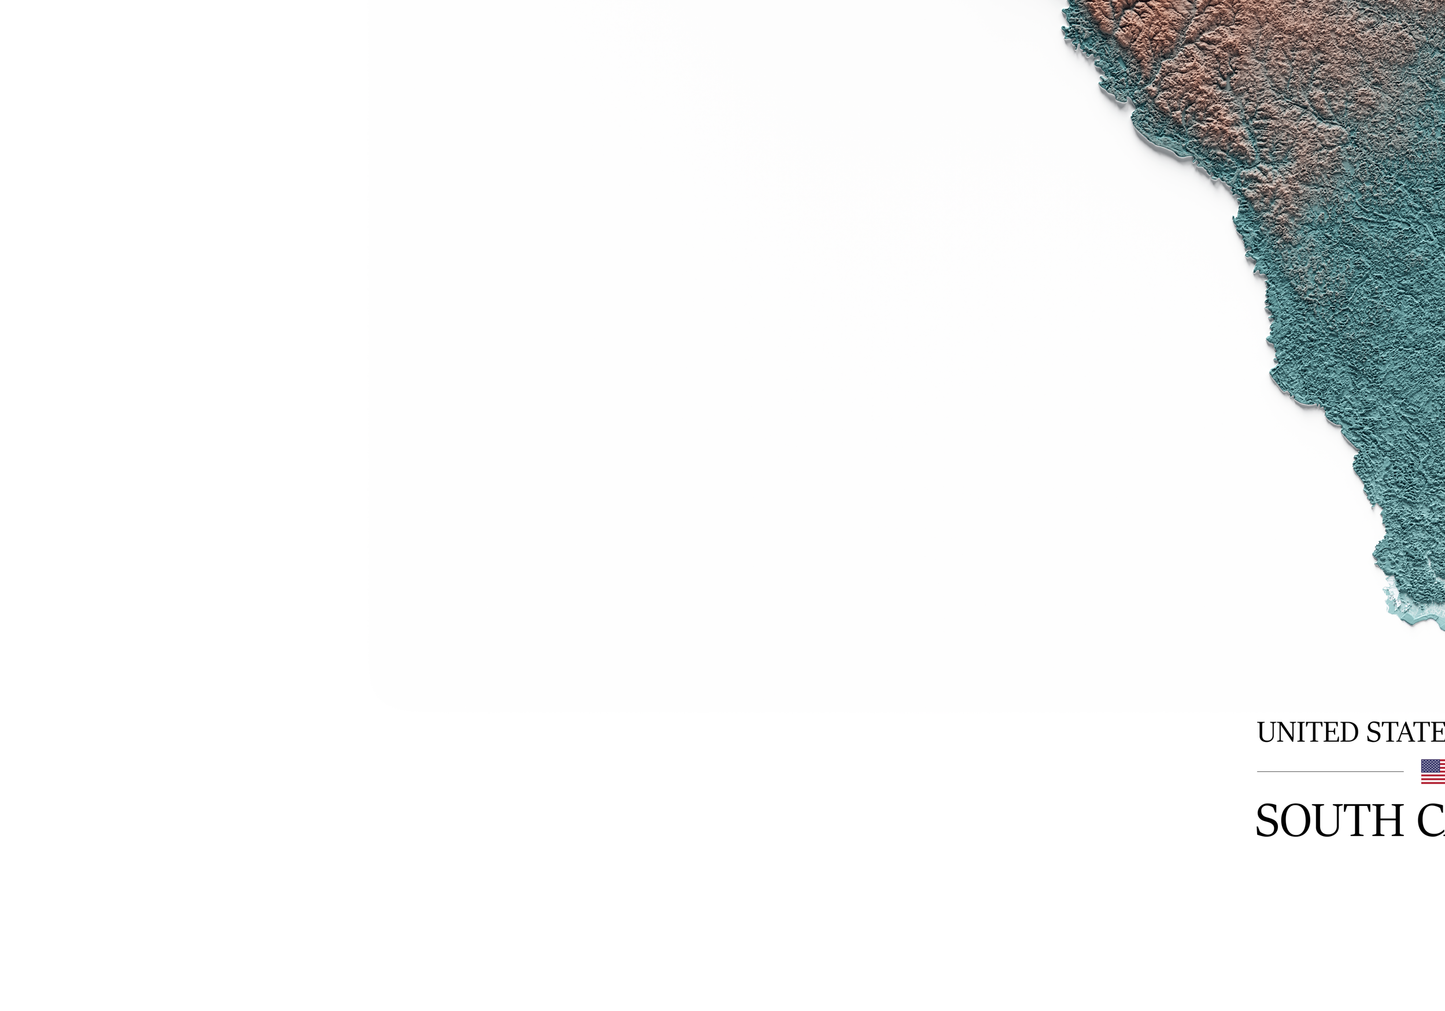 CAROLINA DEL SUR. Mapa de relieve con contraste.